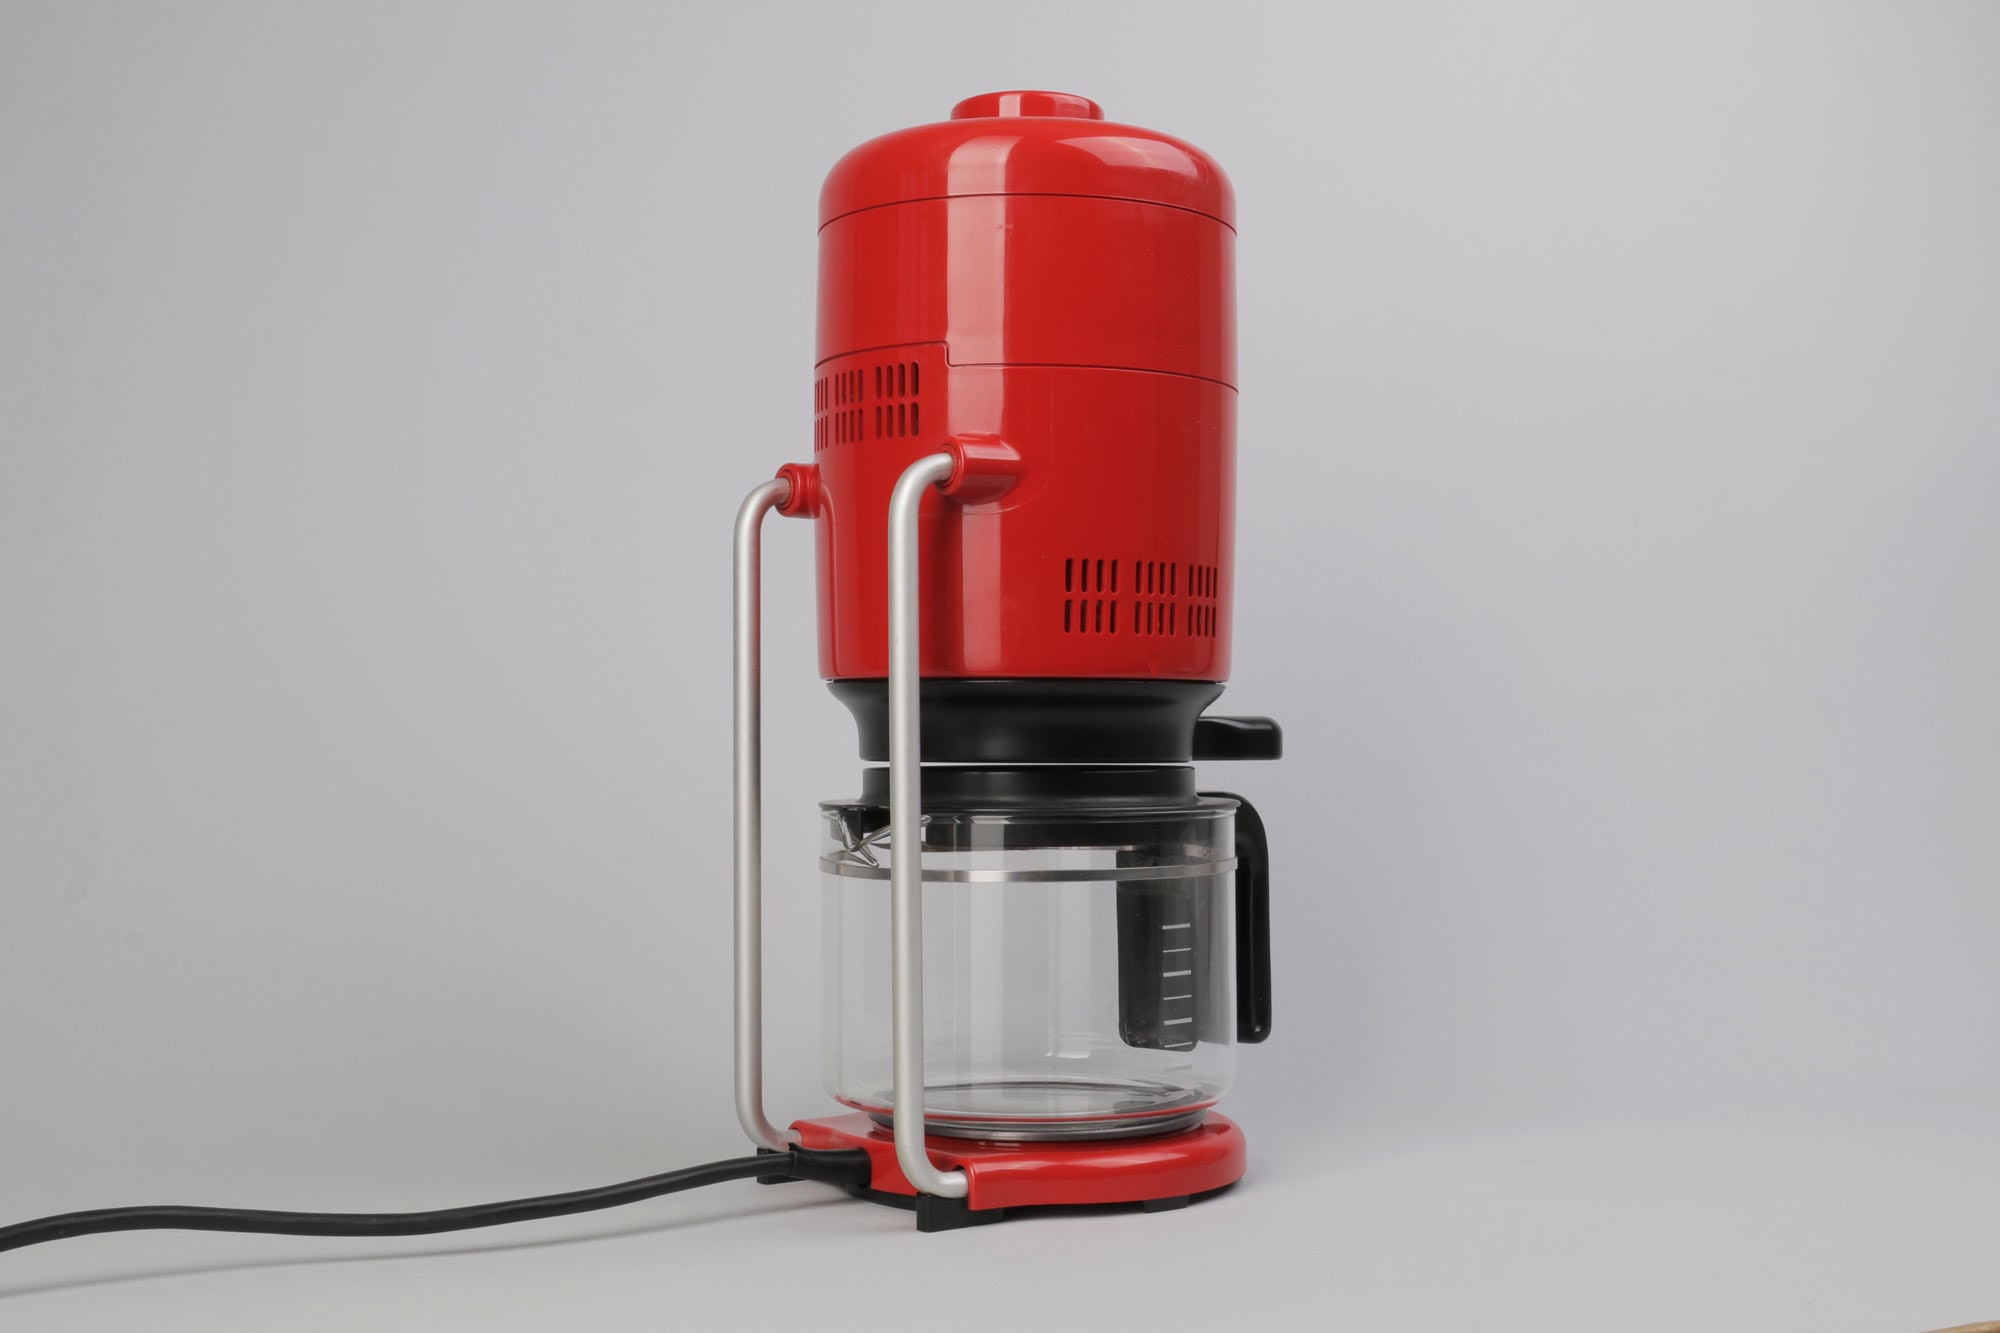 Braun KF20 Aromaster, Retro-Futuristic coffee maker for Sale in